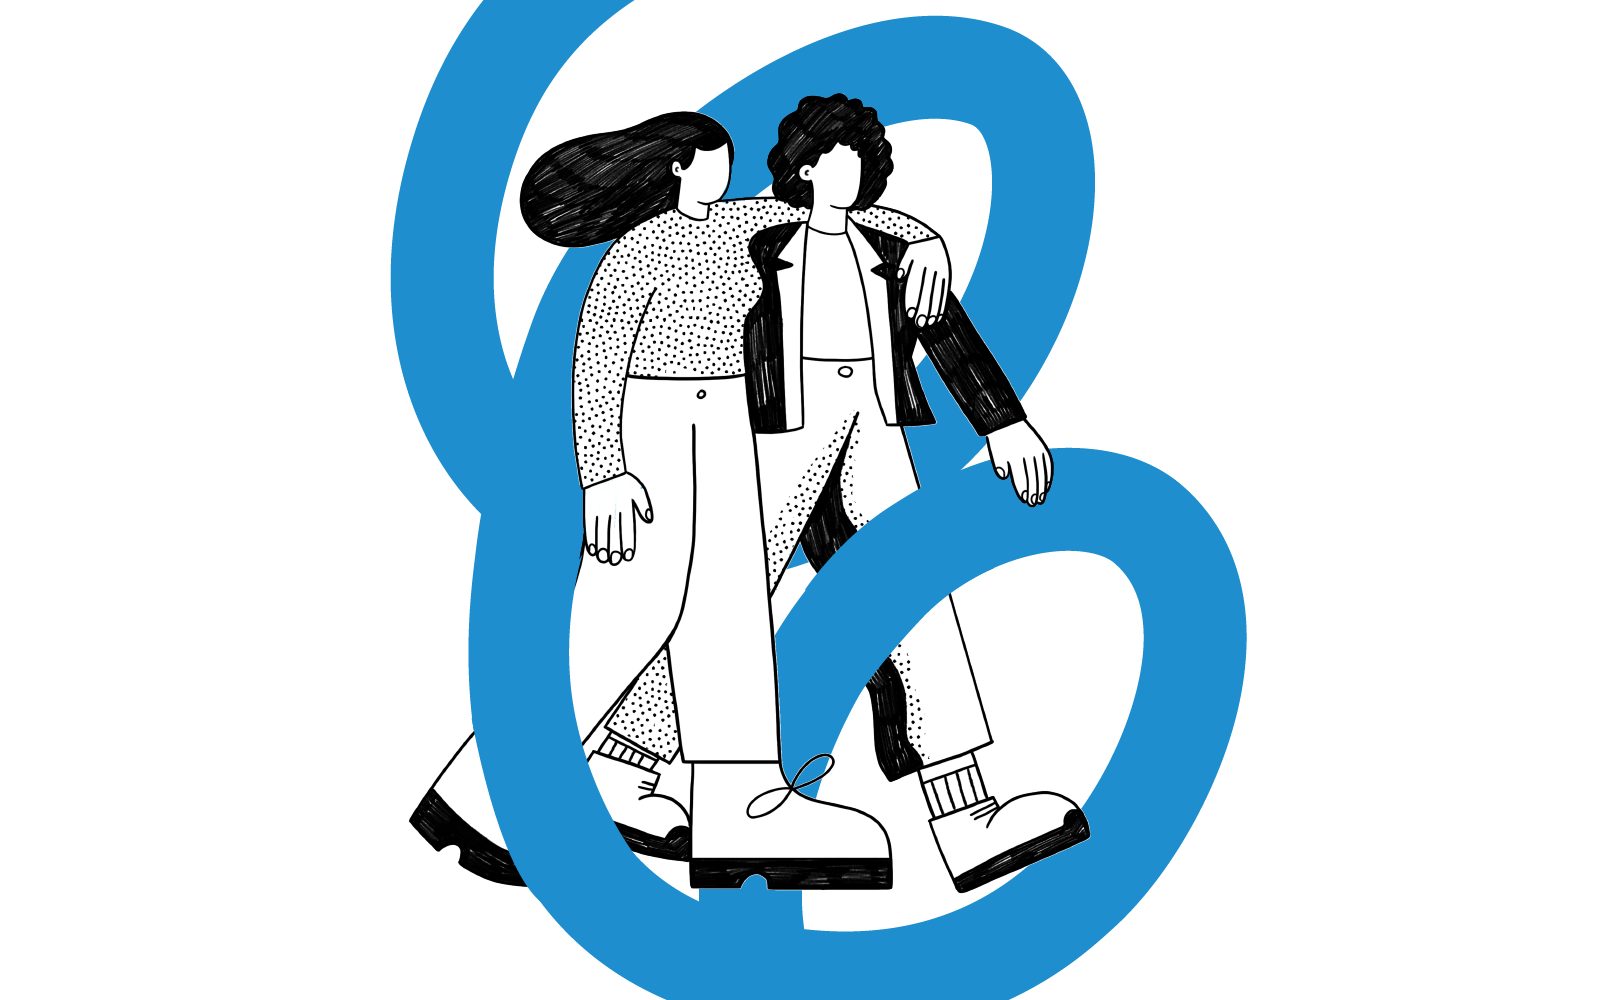 Dibujo de dos personas caminando juntas. Una de ellas tiene su brazo pasado por encima de la espalda de la otra y les rodea un trazo azul.